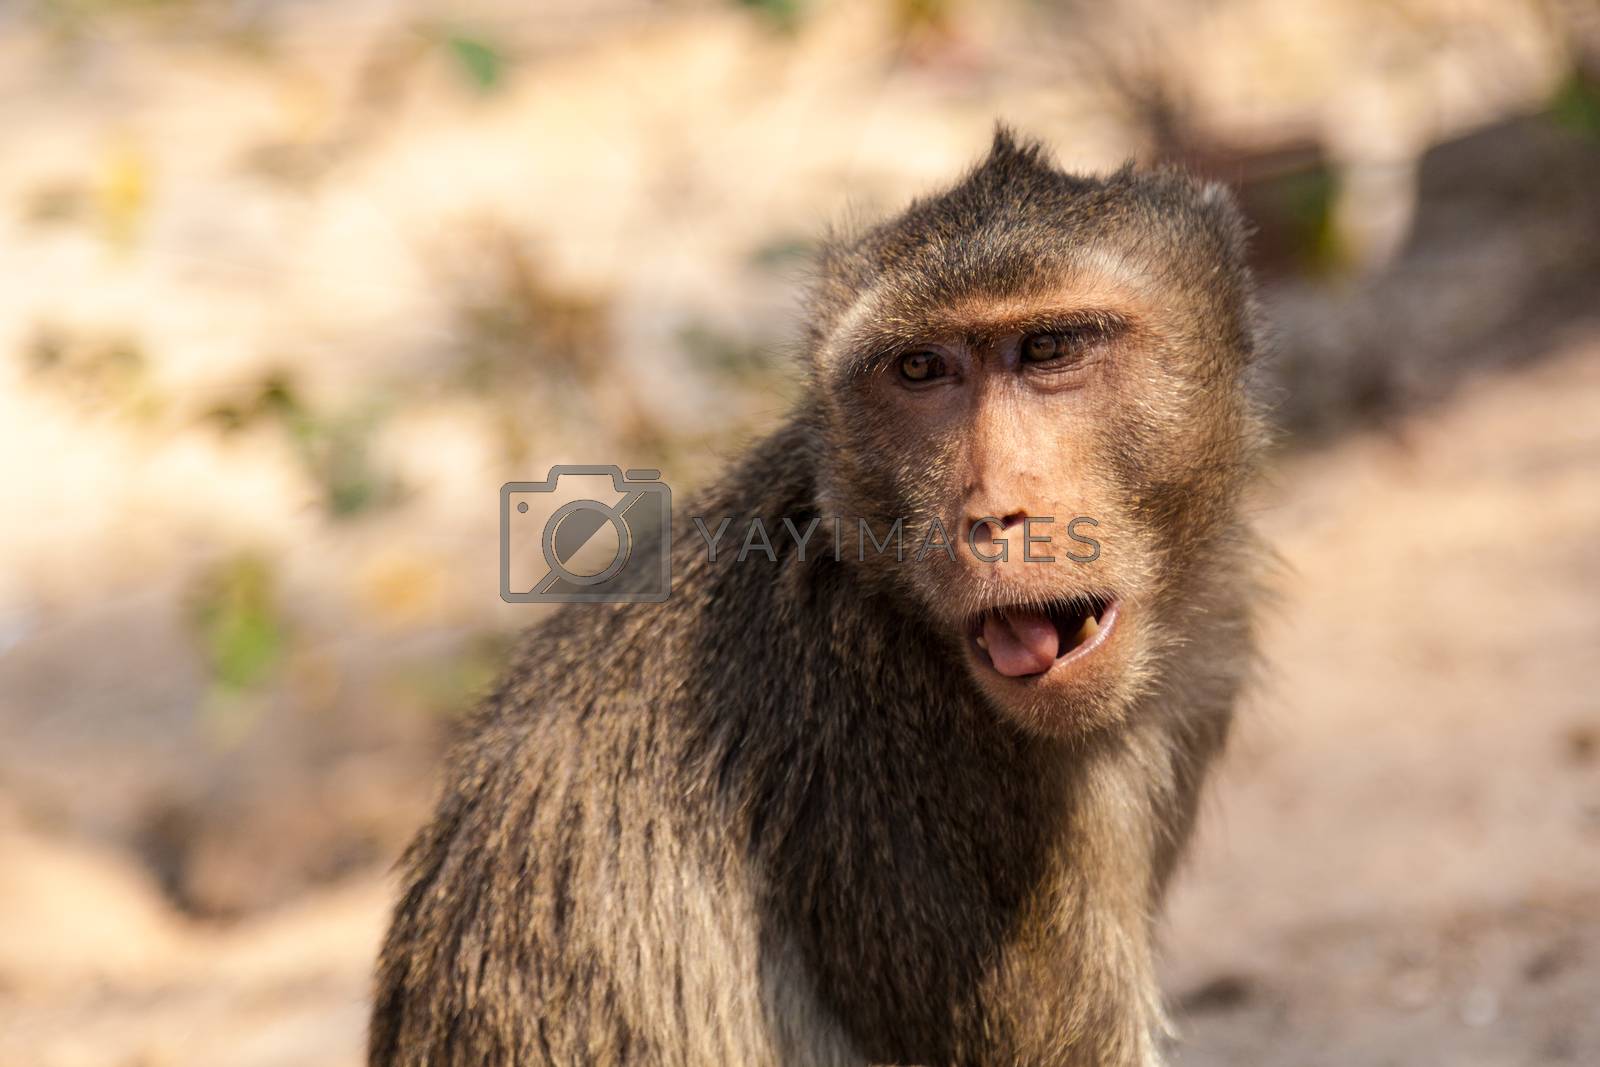 Royalty free image of Monkey by Belyaevskiy